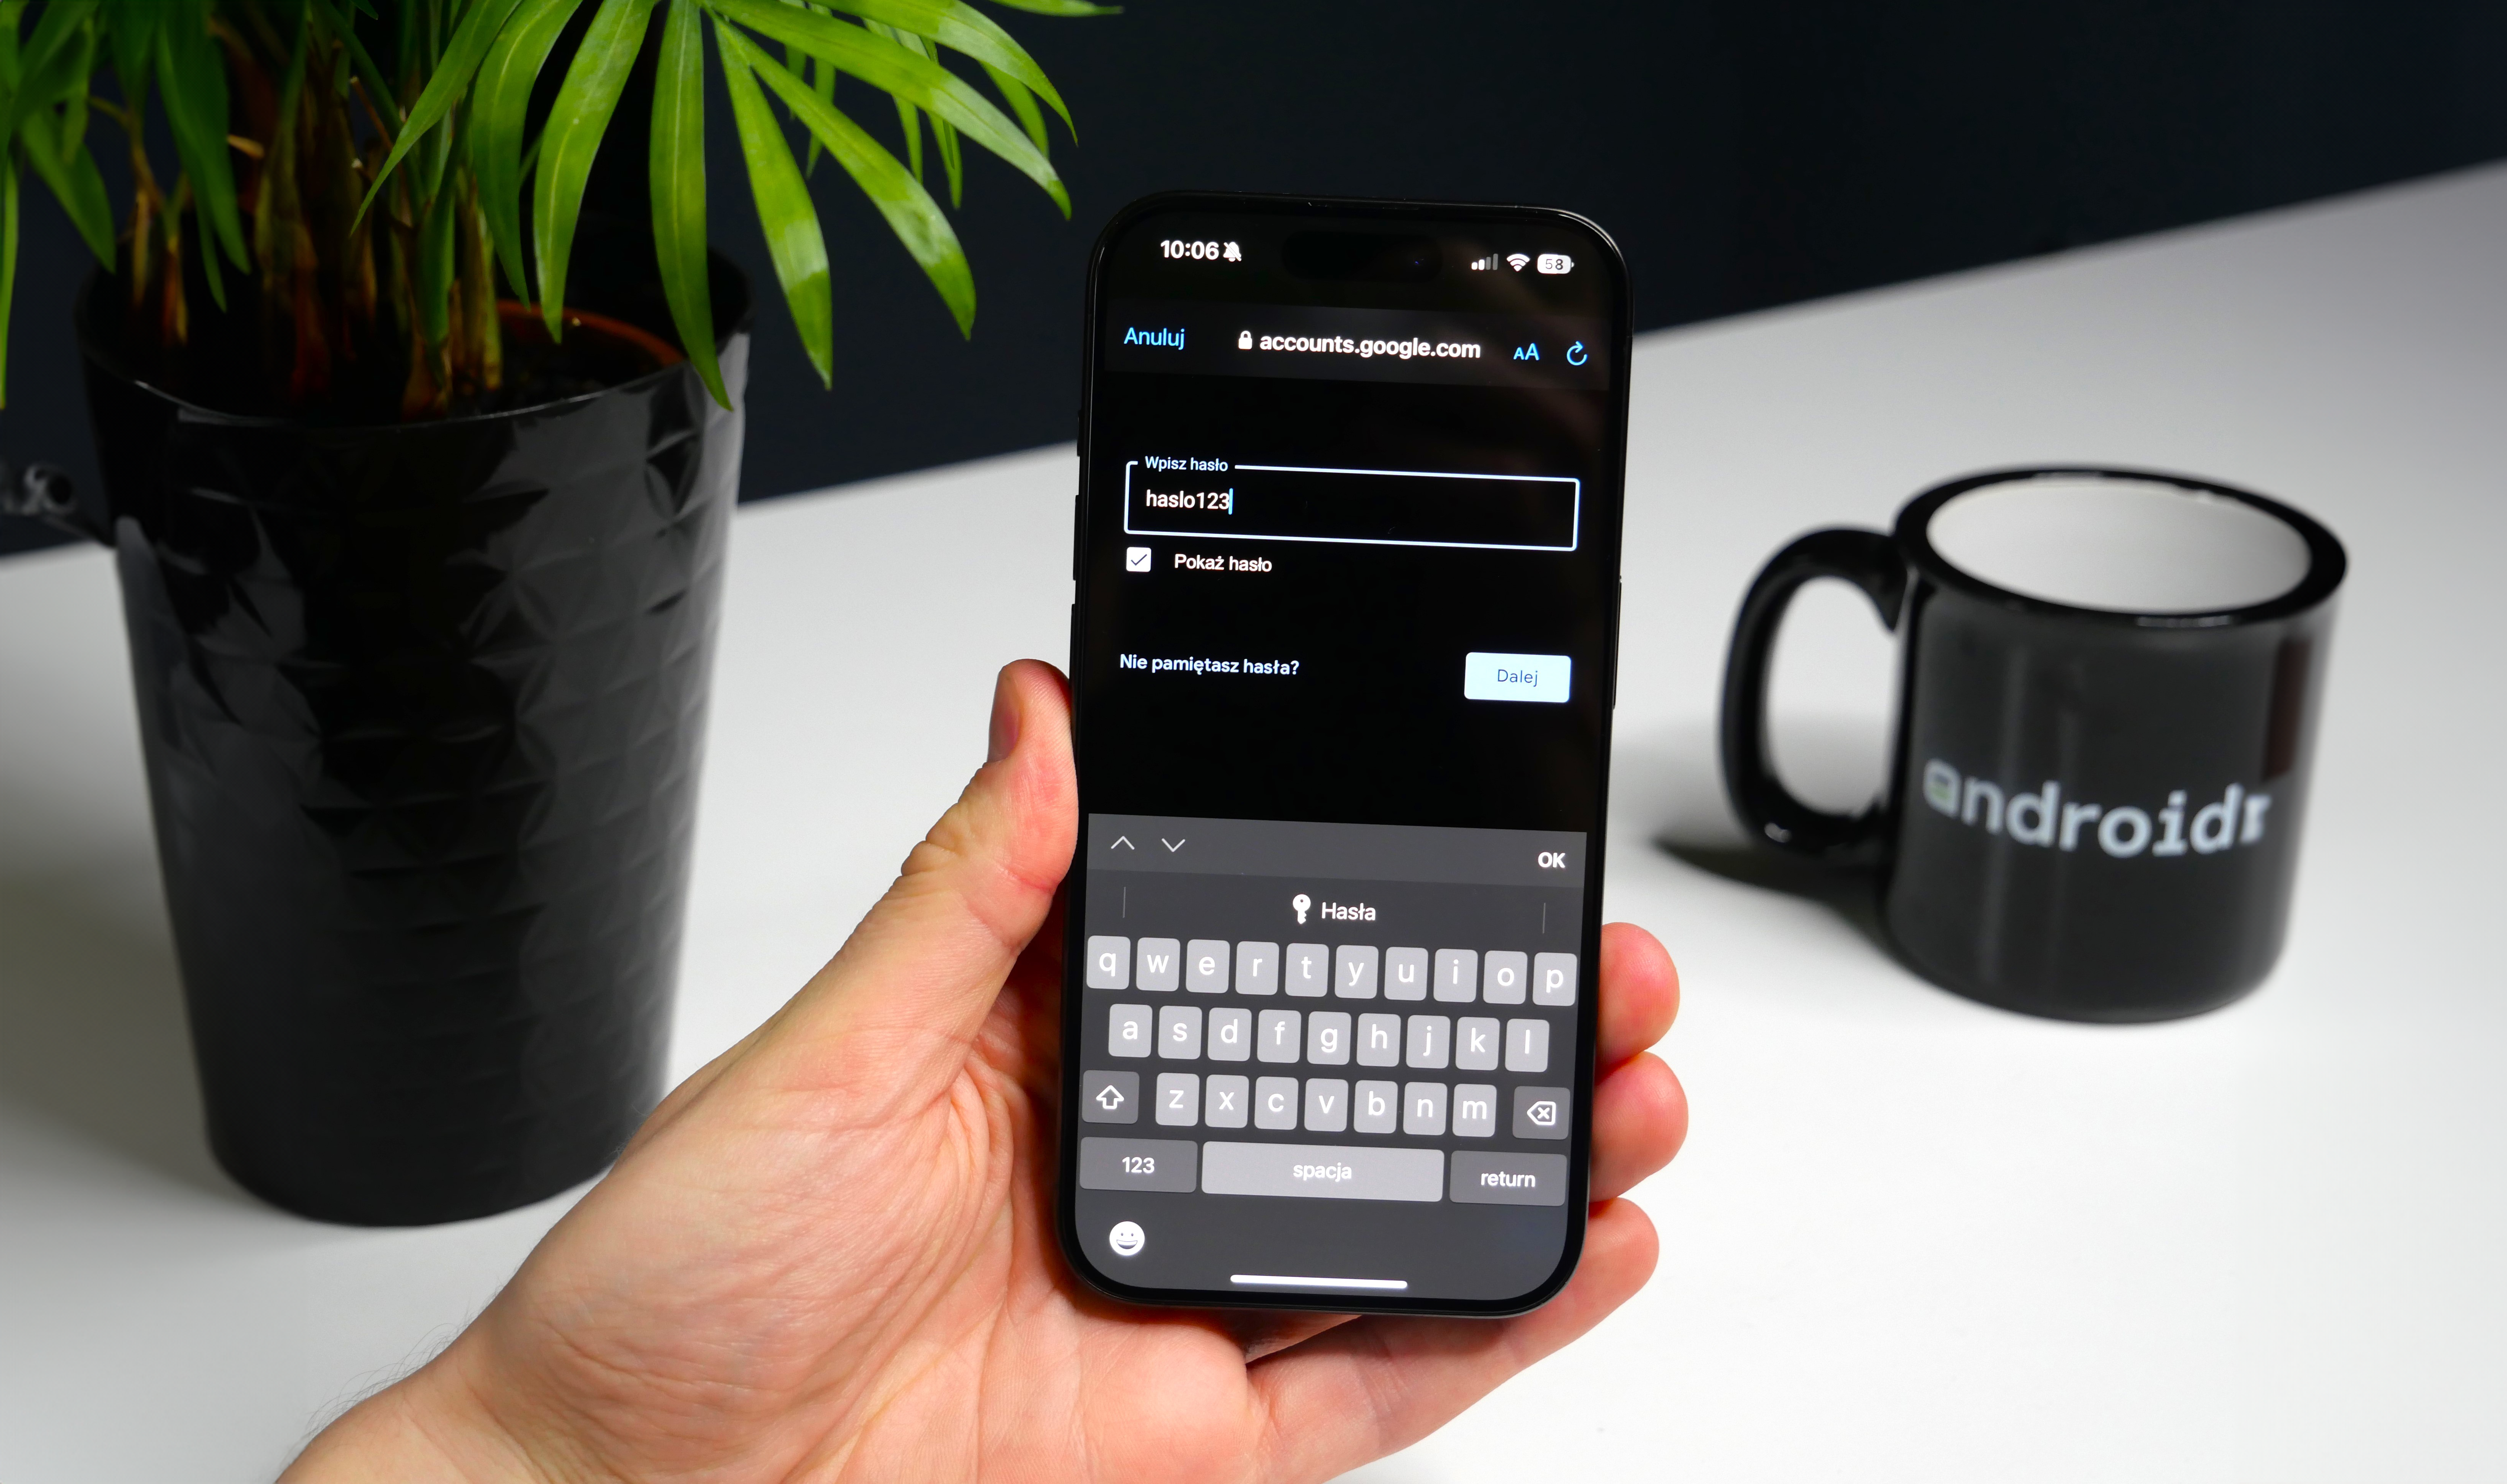 Ręka trzymająca smartfon z wyświetlaczem logowania do konta Google, na biurku doniczka z rośliną i kubek z napisem "android".